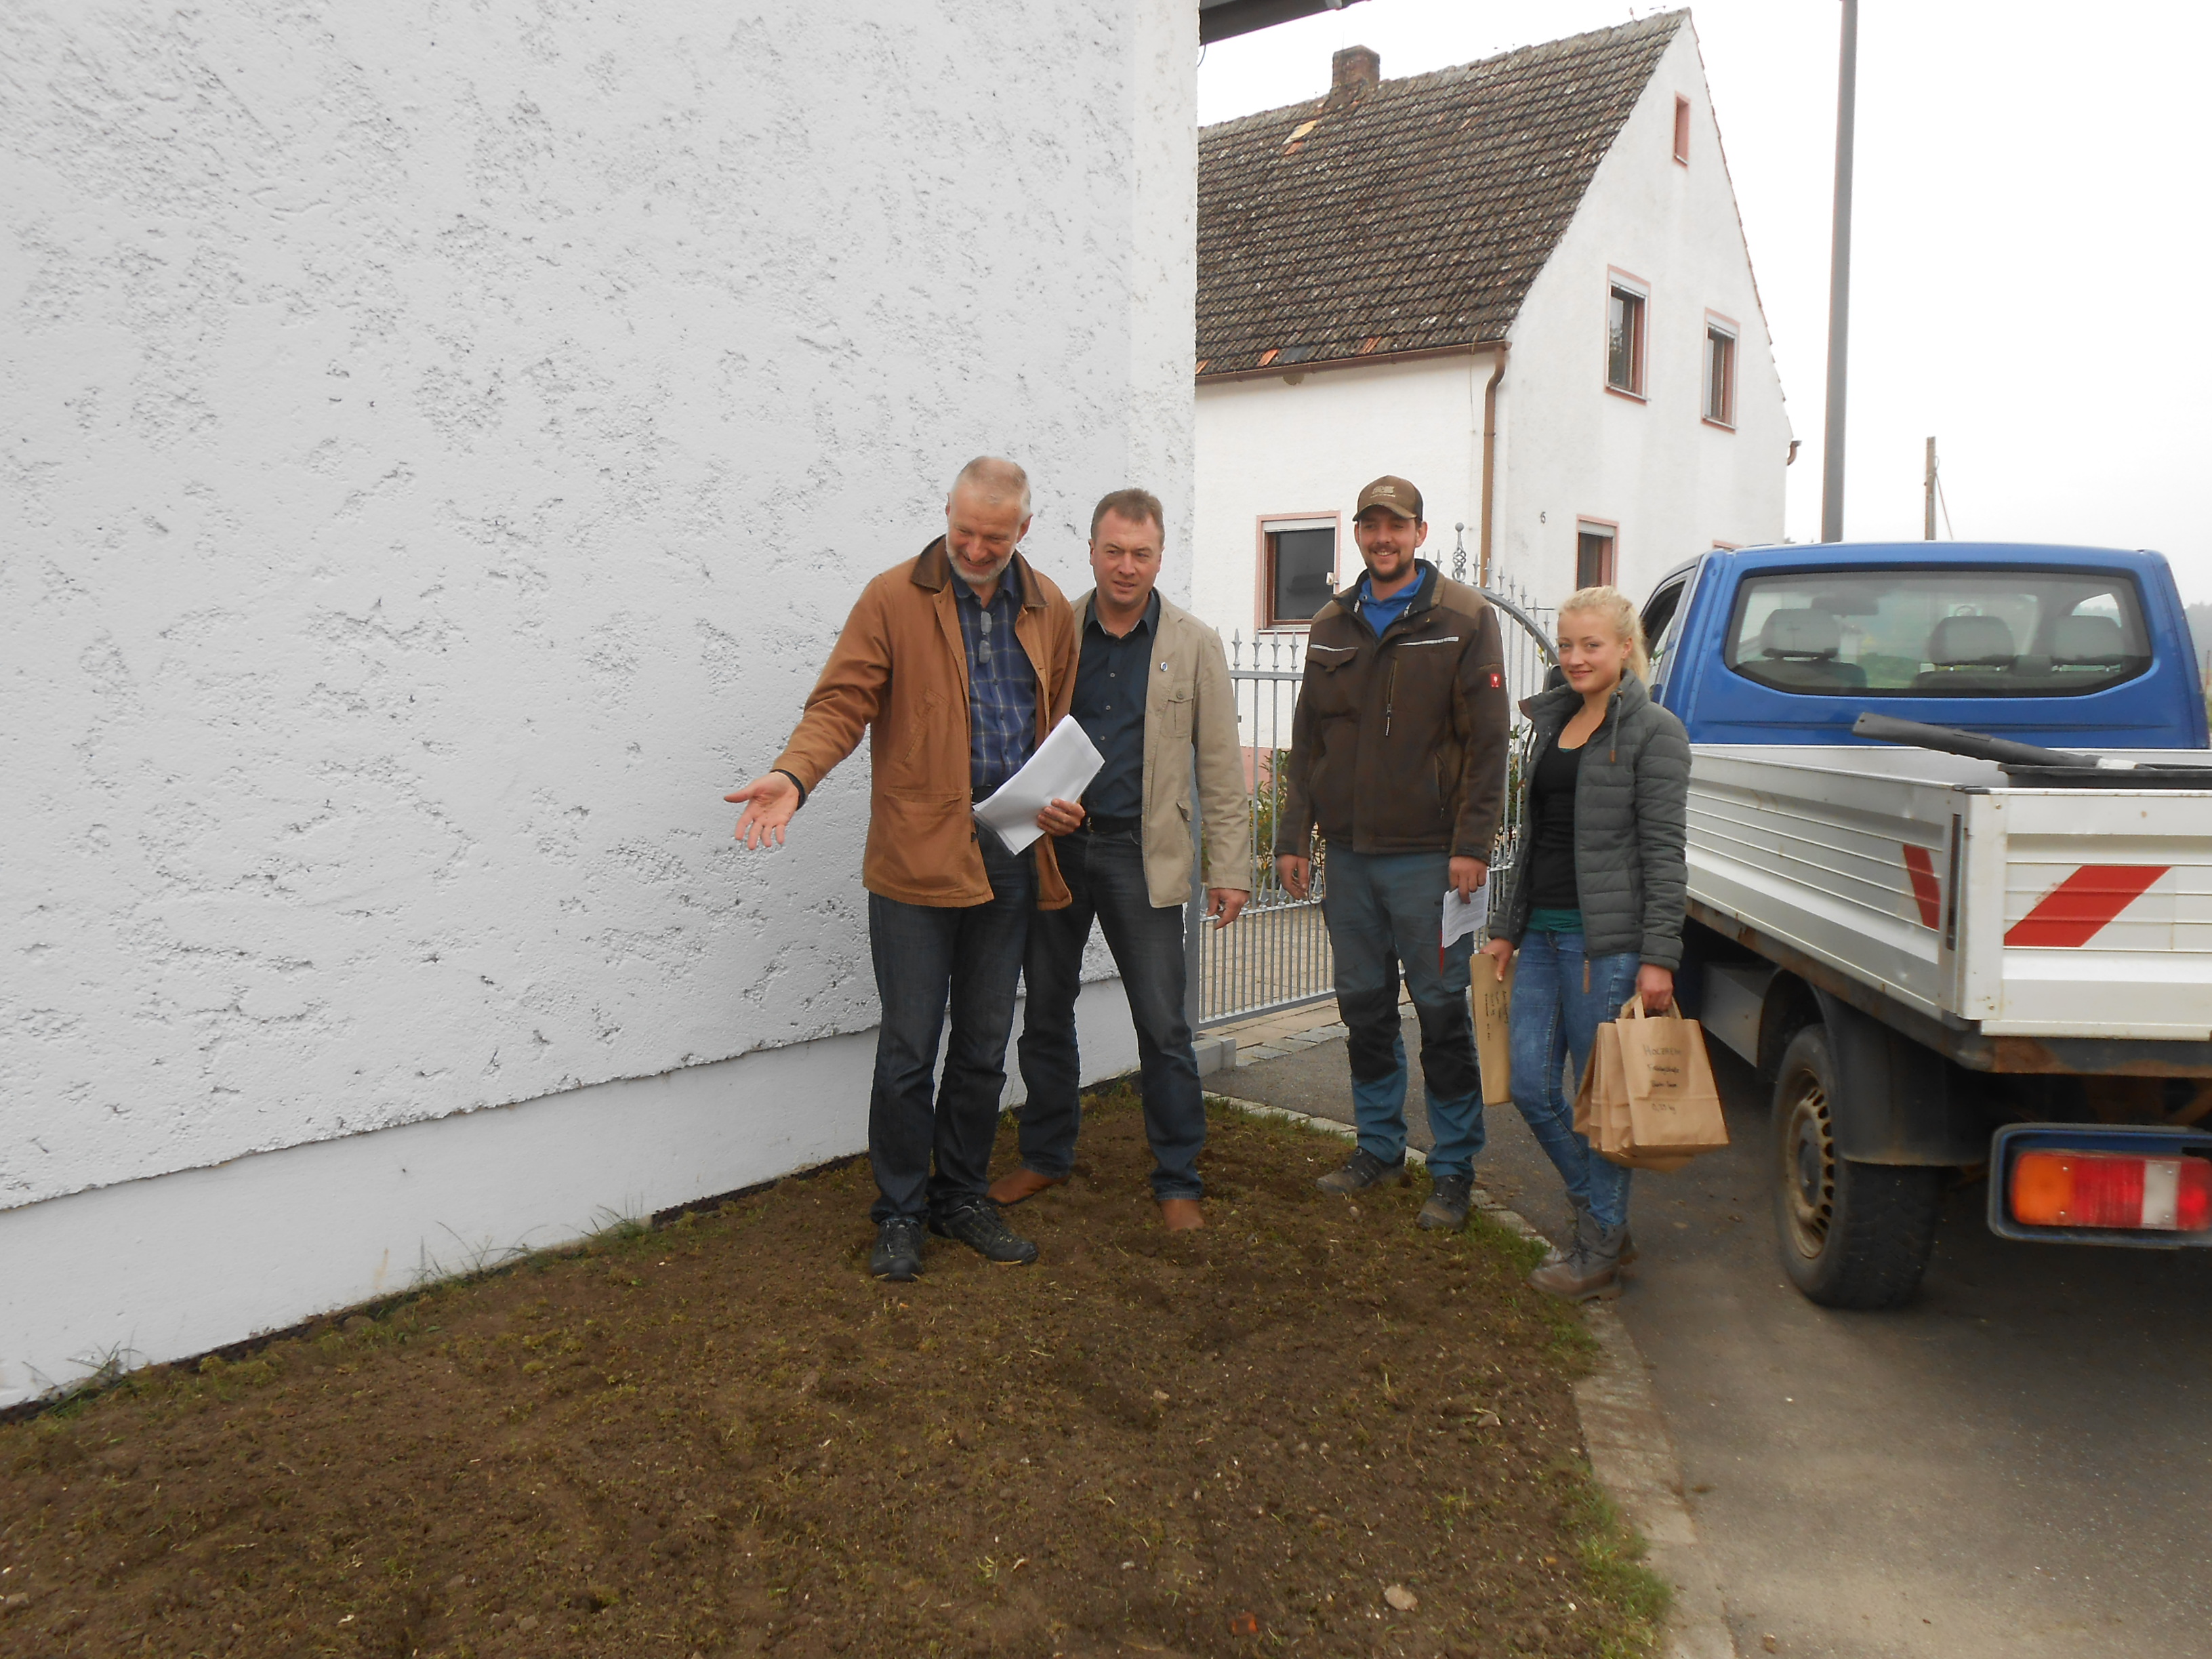 Aktion „Blütenzauber in den Gemeinden“ im Landkreis Regensburg – die Gemeinde Holzheim am Forst zieht voraus 